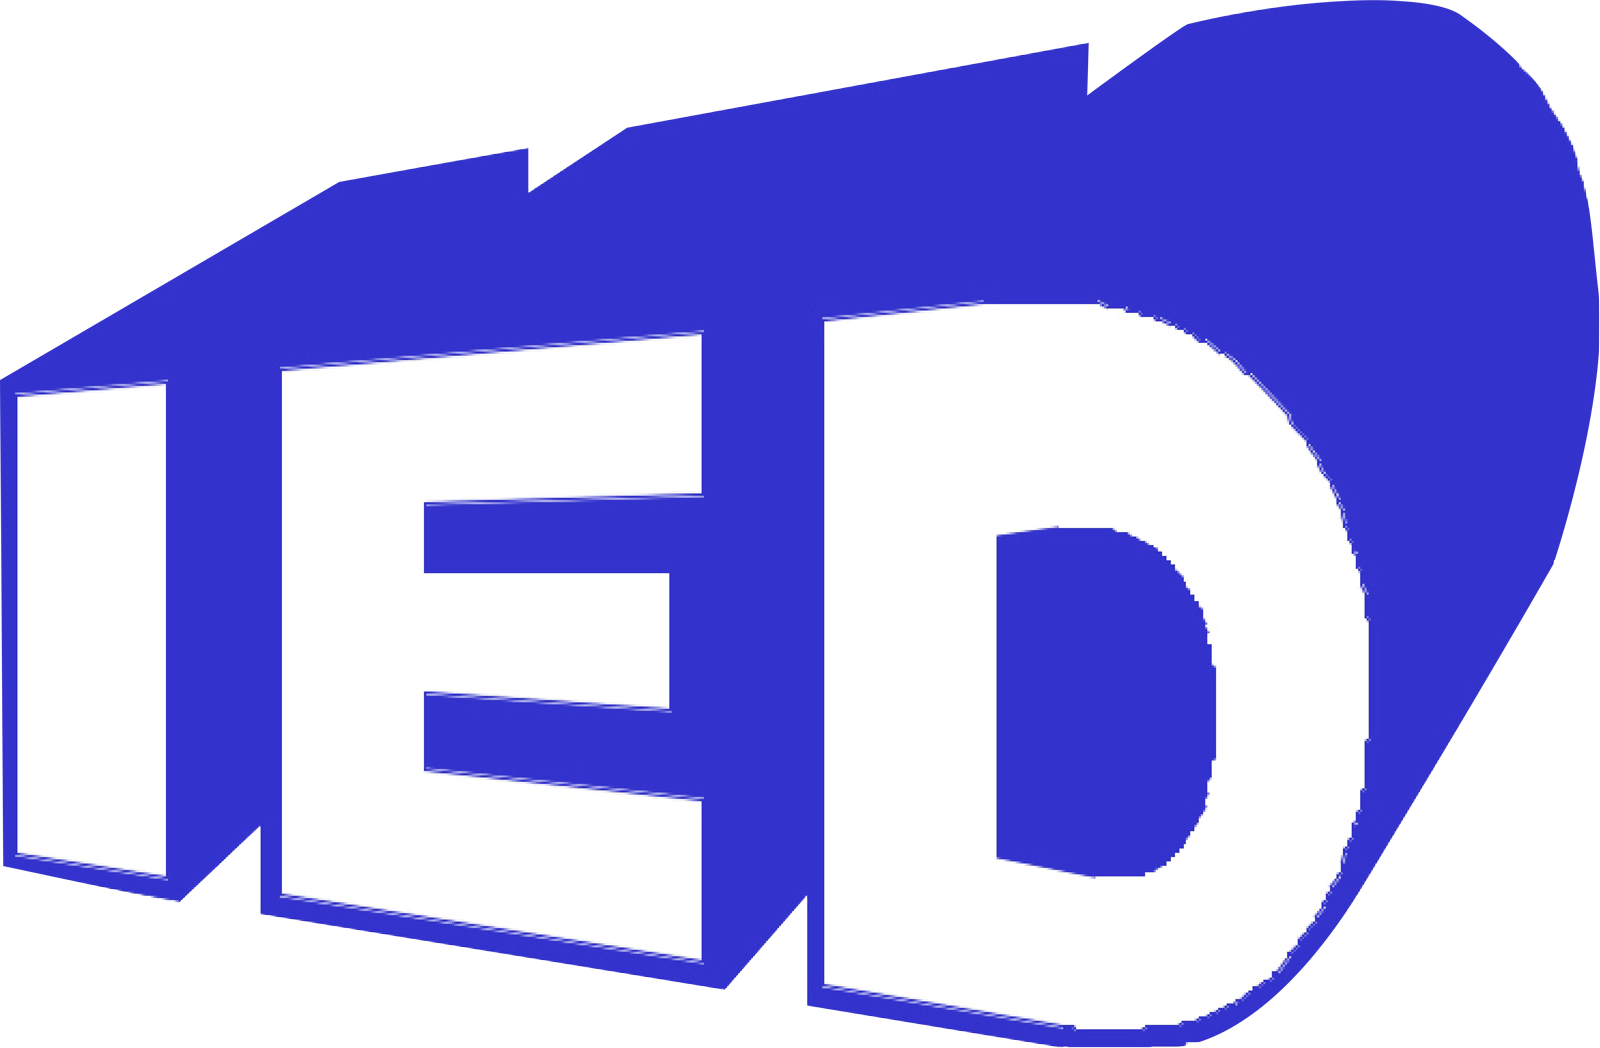 IED Industrieanlagen und Engineering GmbH